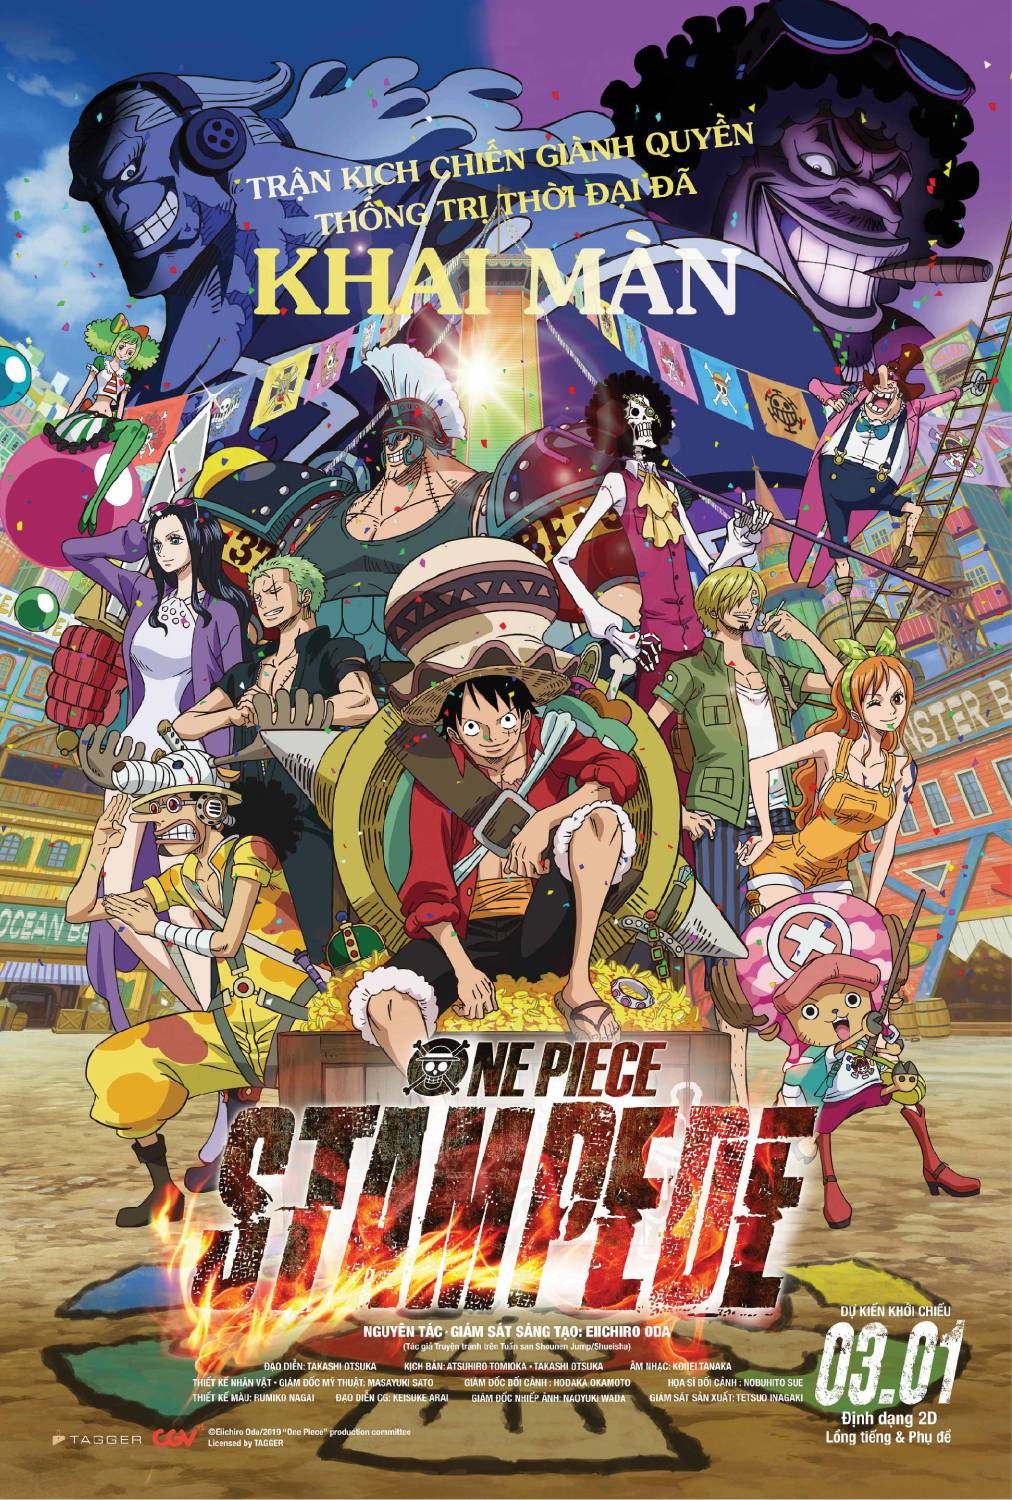 Lễ Hội Hải Tặc là một sự kiện quan trọng của One Piece, nơi mà các fan hâm mộ được đến và trải nghiệm câu chuyện của các nhân vật trong tác phẩm này. Bức hình này sẽ khiến bạn cảm thấy như bạn đang tham gia vào lễ hội đó, còn gì tuyệt hơn khi được trải nghiệm những thứ đó ngay tại nhà.